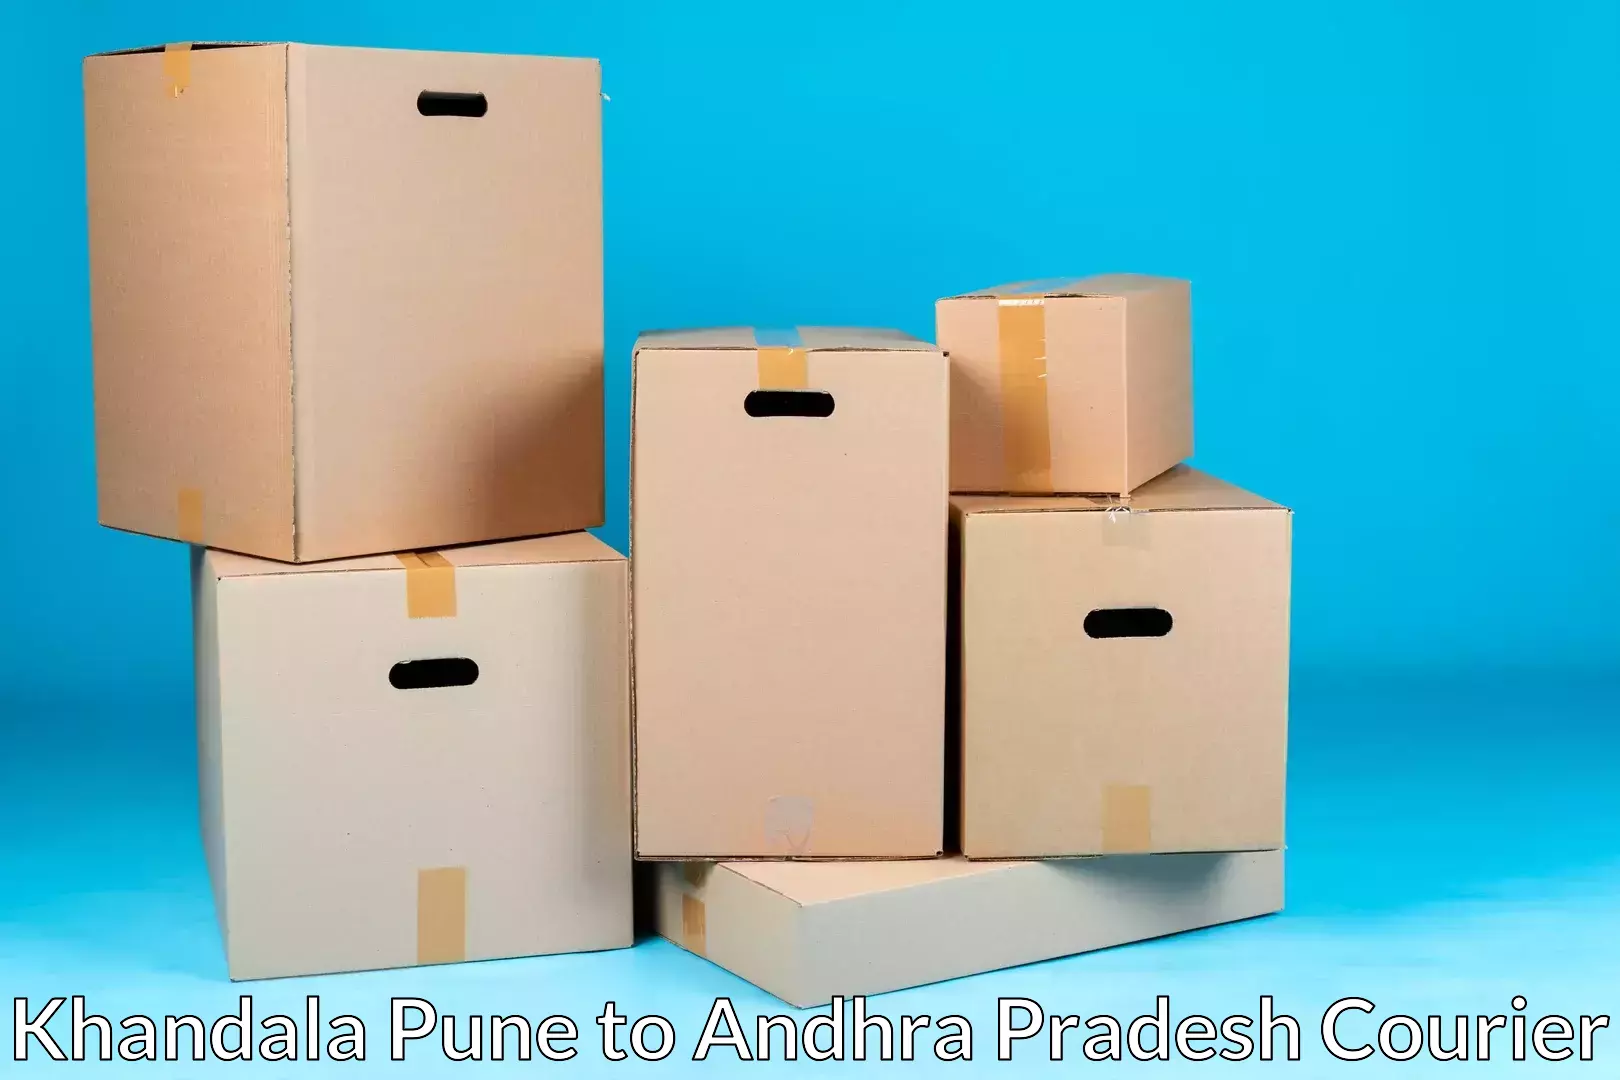 Personalized moving and storage Khandala Pune to Gajapathinagaram